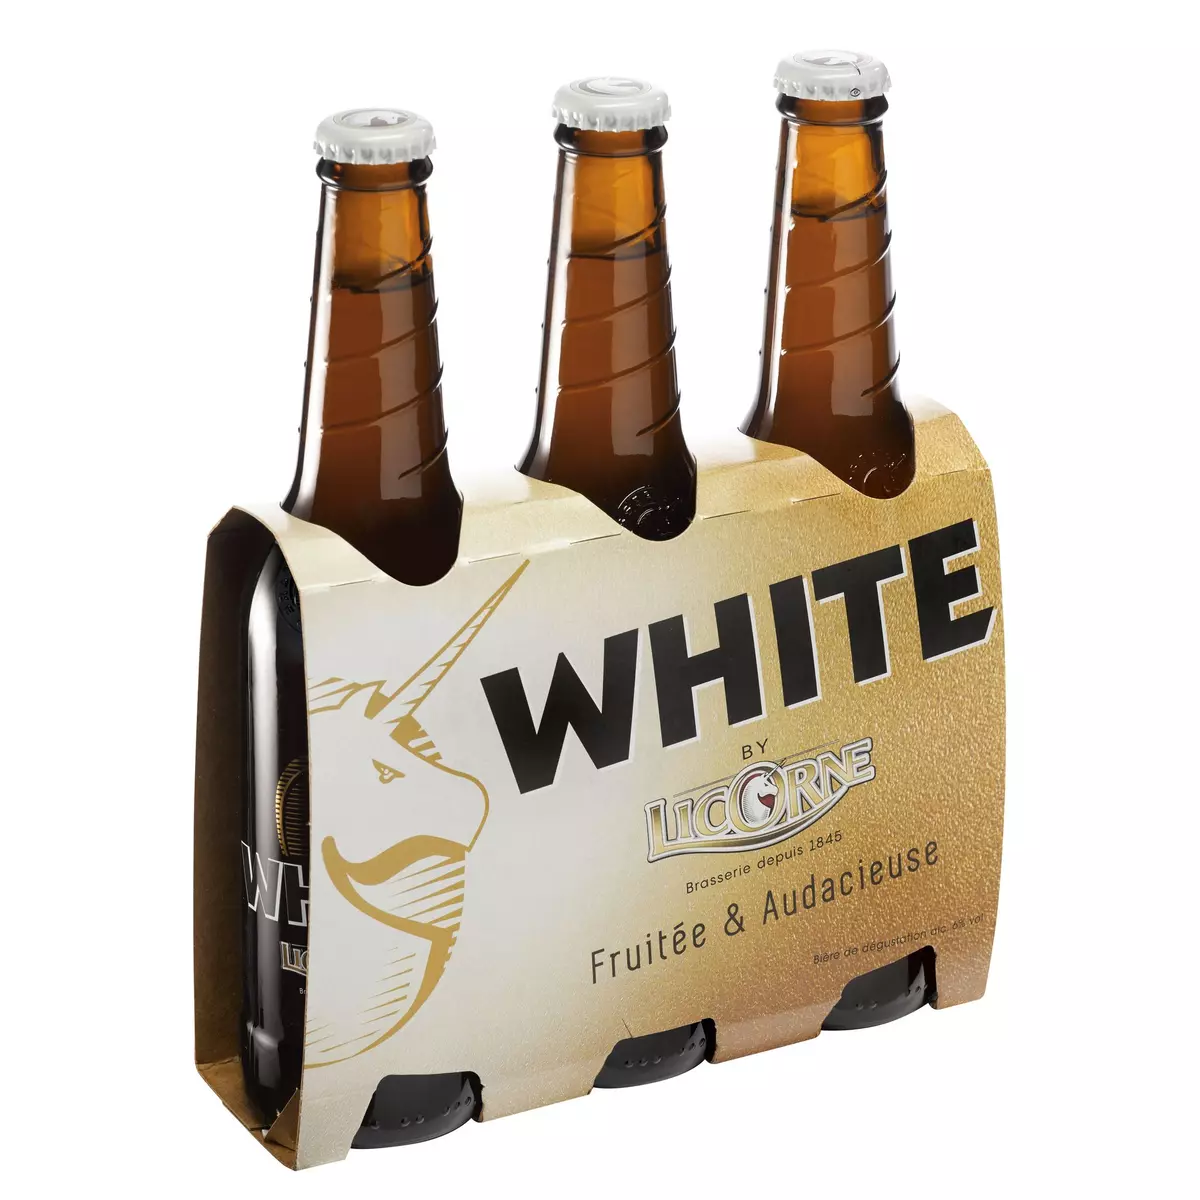 LICORNE Bière blonde White fruitée 6% bouteilles 3x33cl